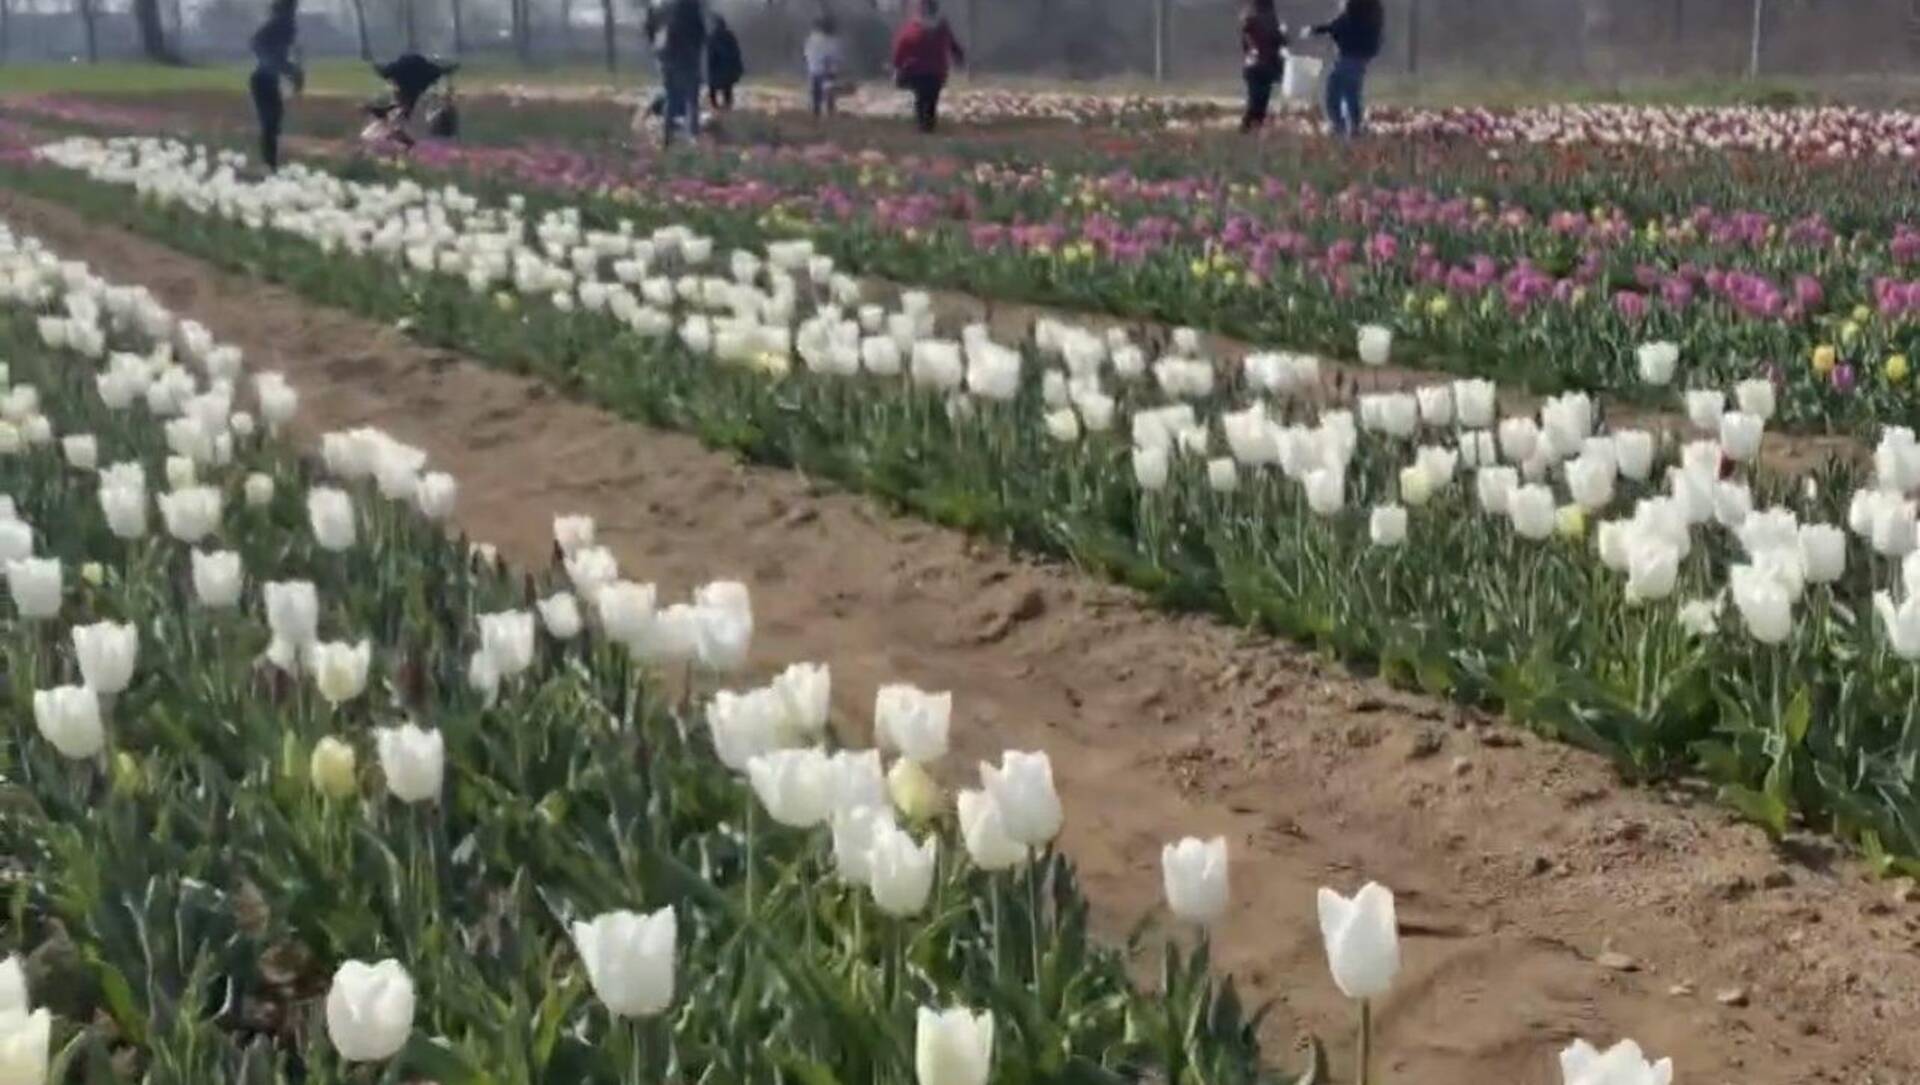 Ieri su ilS: prime foto sul campo di tulipani, ritardi per carta d’identità, ladri di cavi, sold out per i Fuoriscena